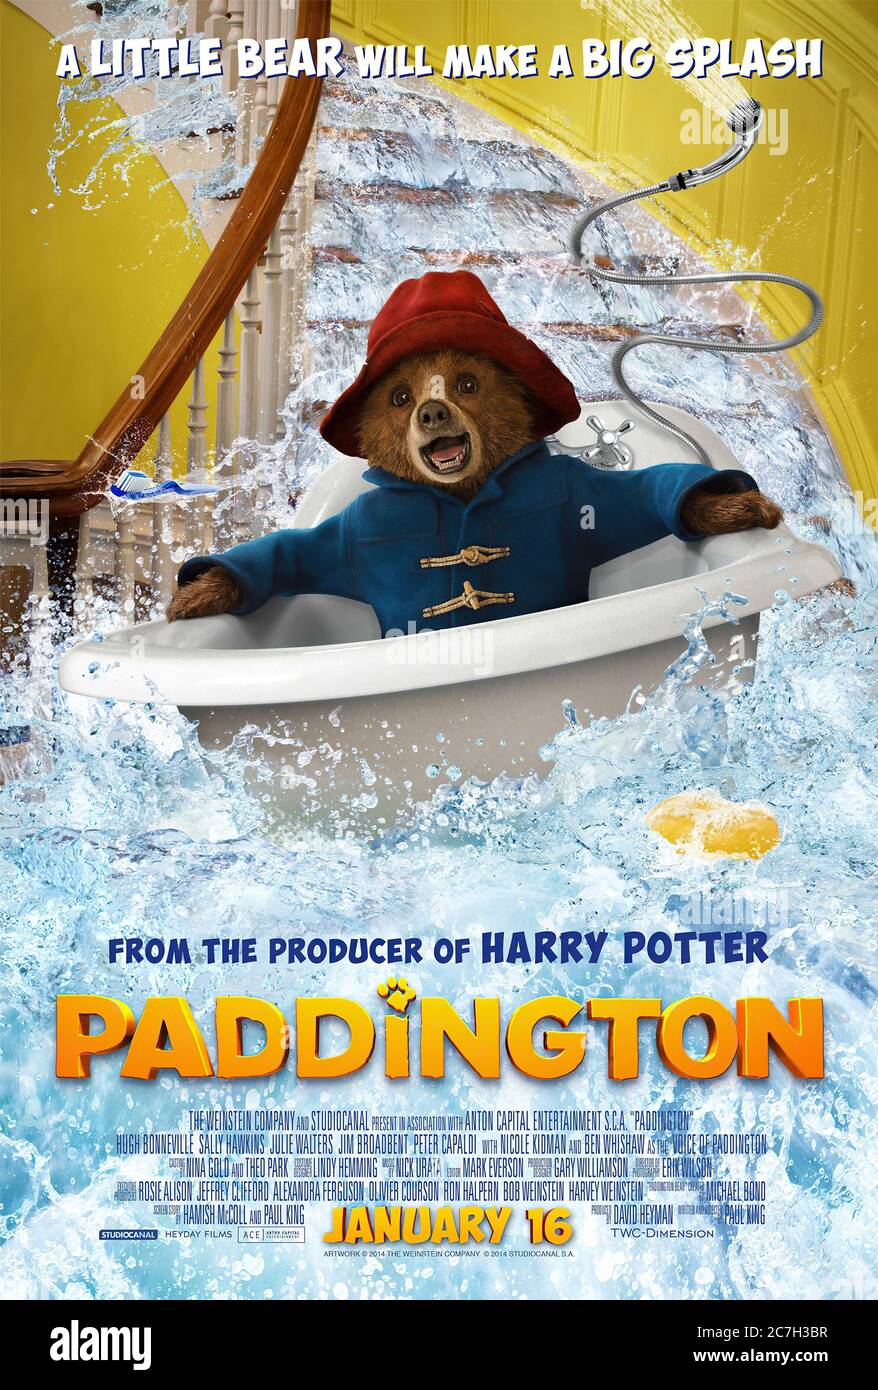 Paddington - Movie Poster Stock Photo